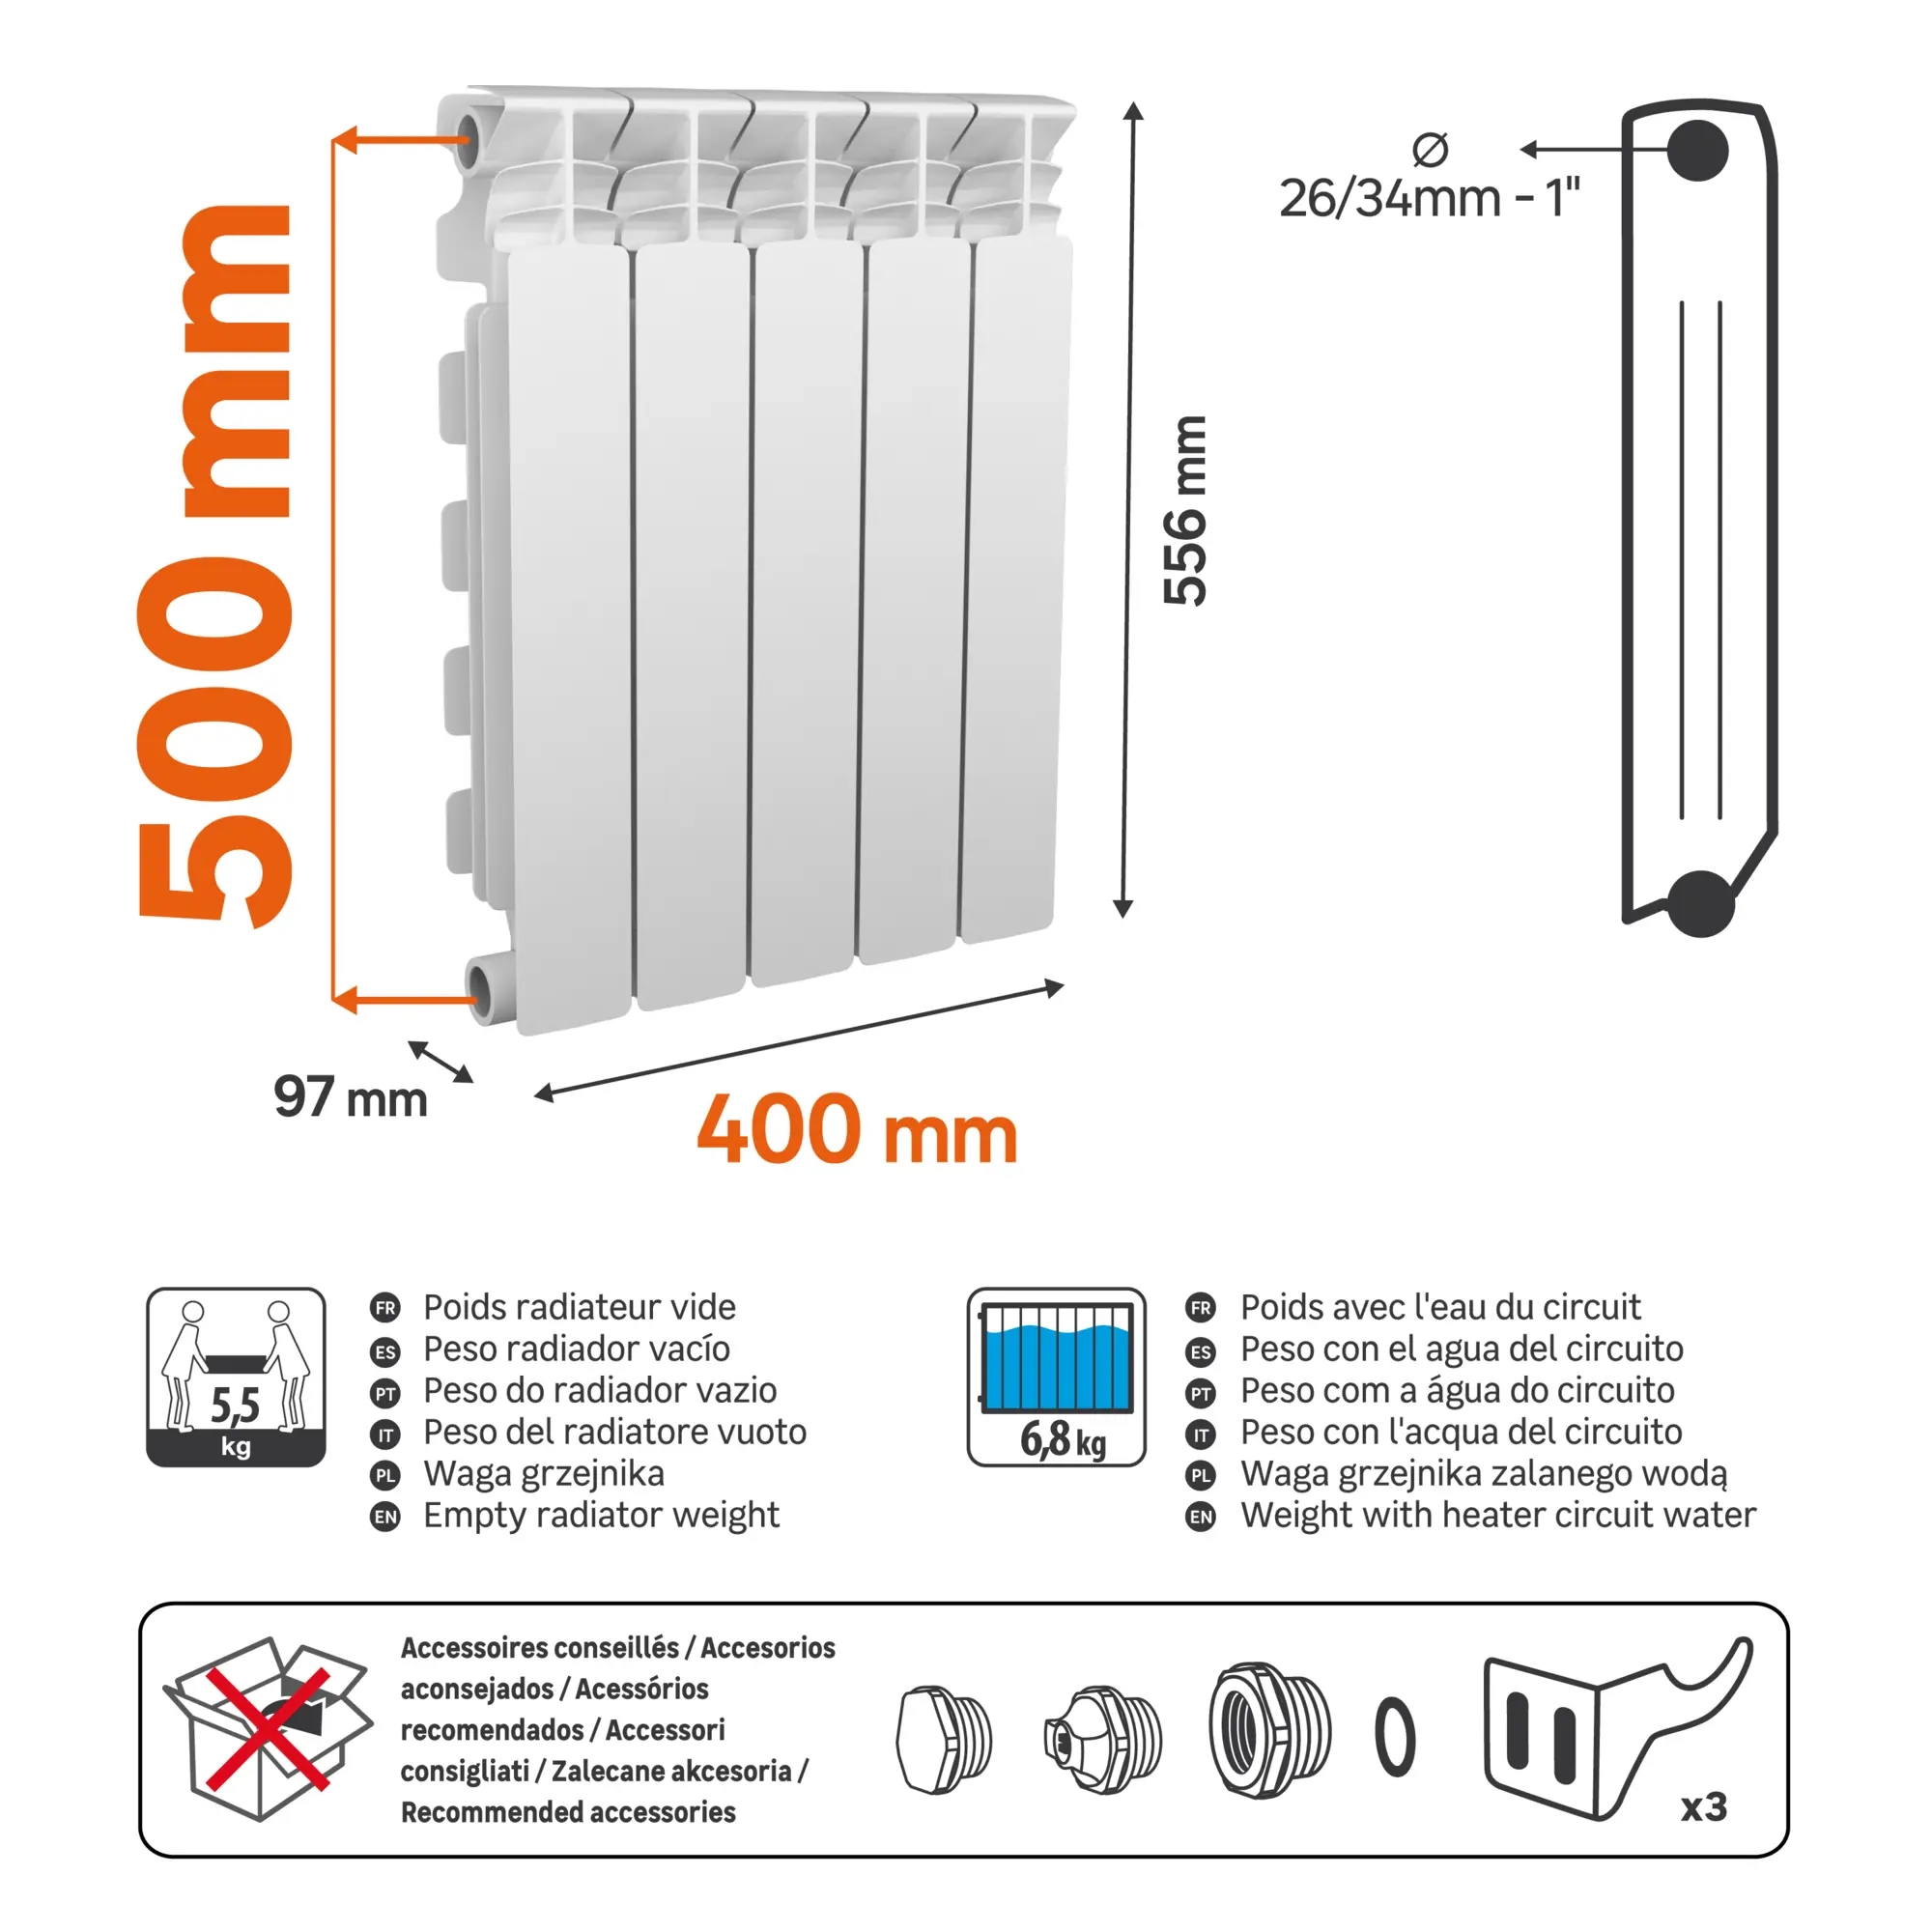 Radiatore acqua calda EQUATION 500/100 in alluminio 5 elementi interasse 50 cm - 4